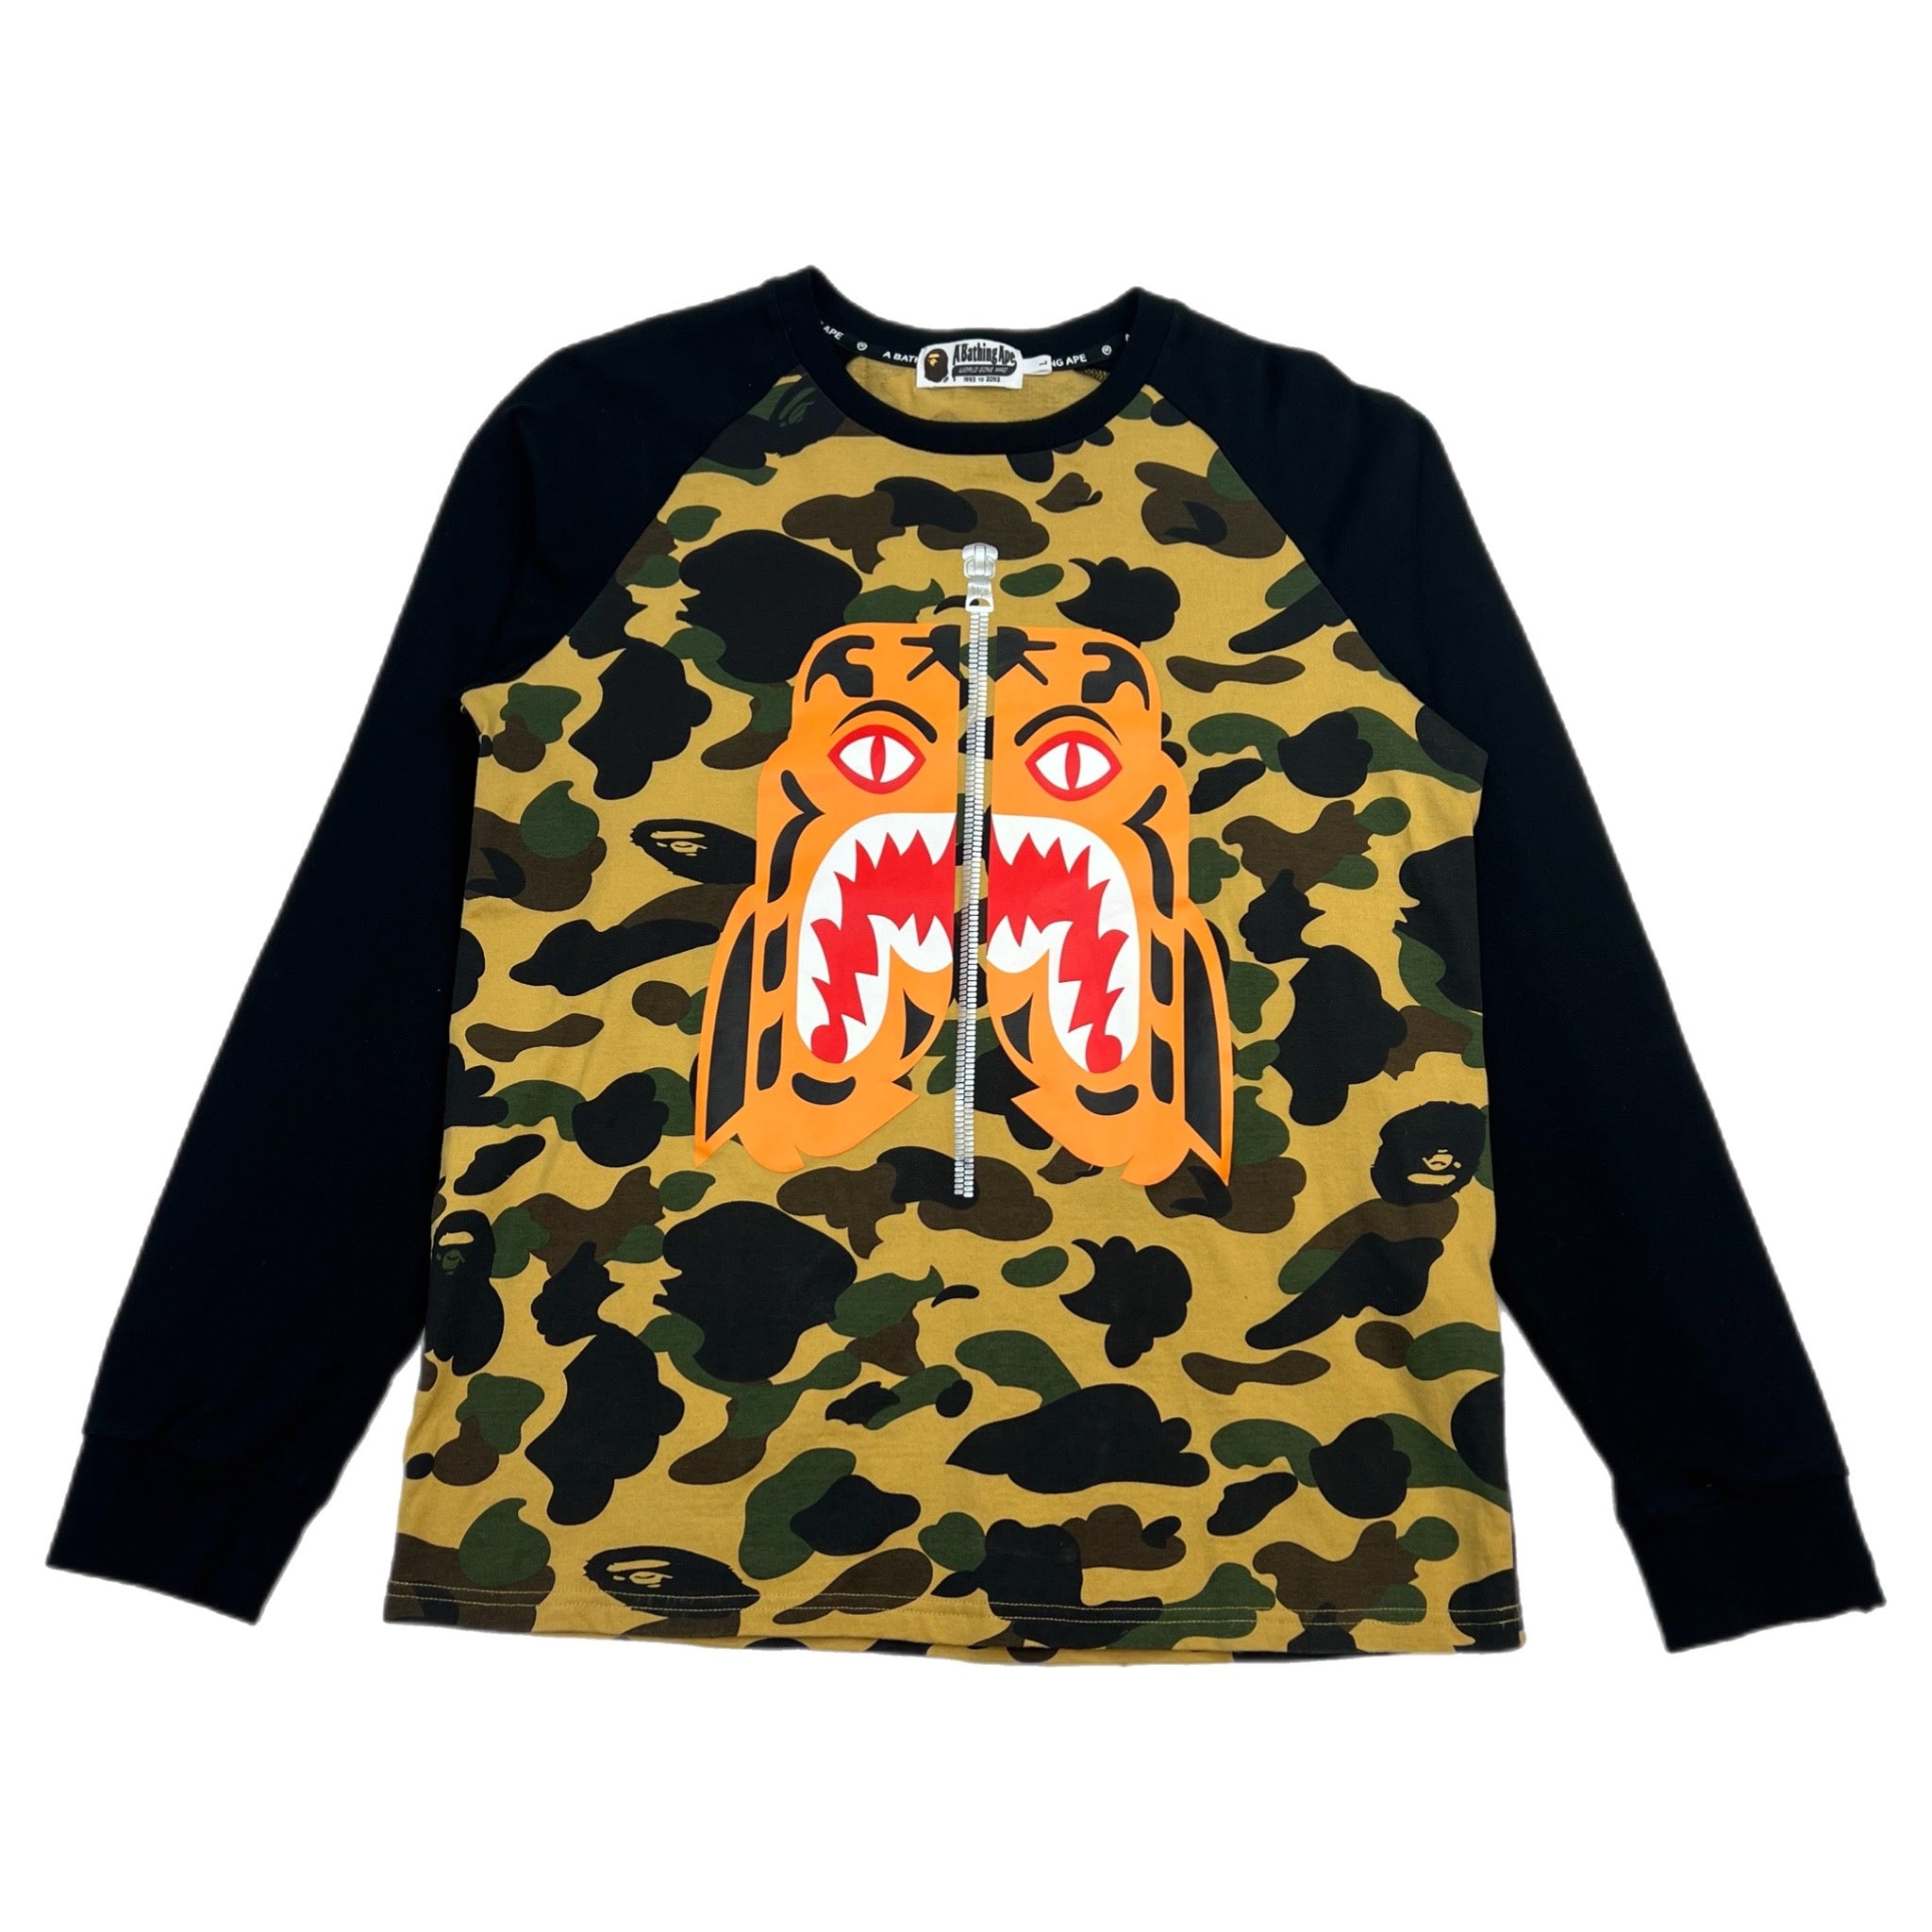 Bape Tiger “Funthera Militia” Long Sleeve Shirt